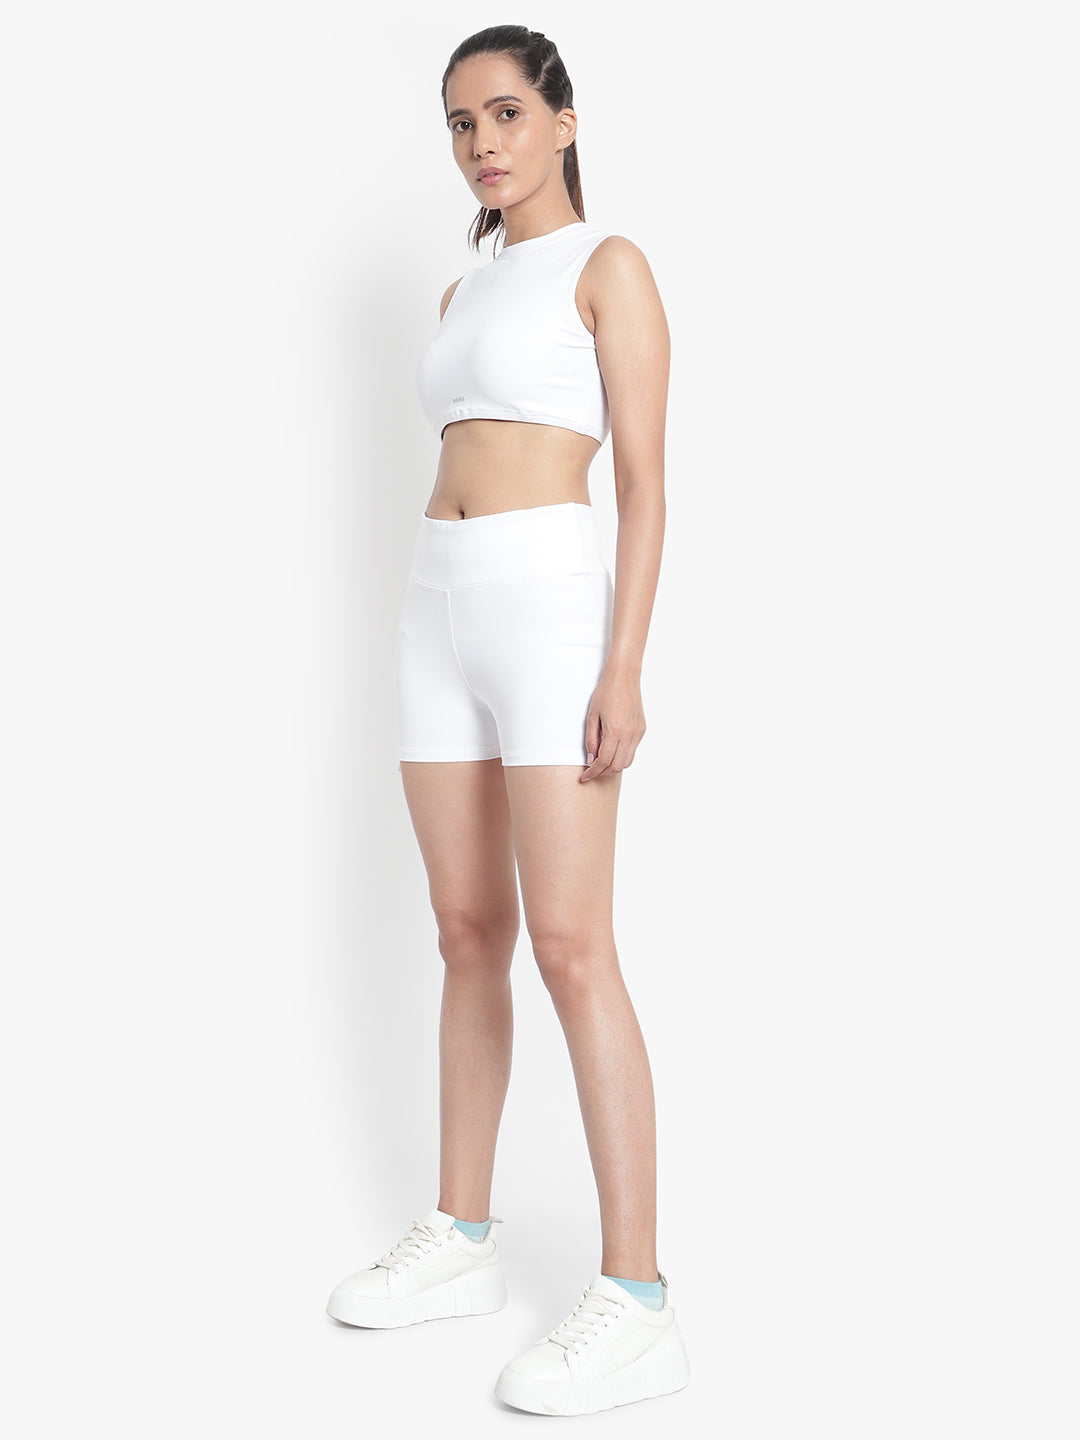 Aero Shorts & Crop Top Set - White